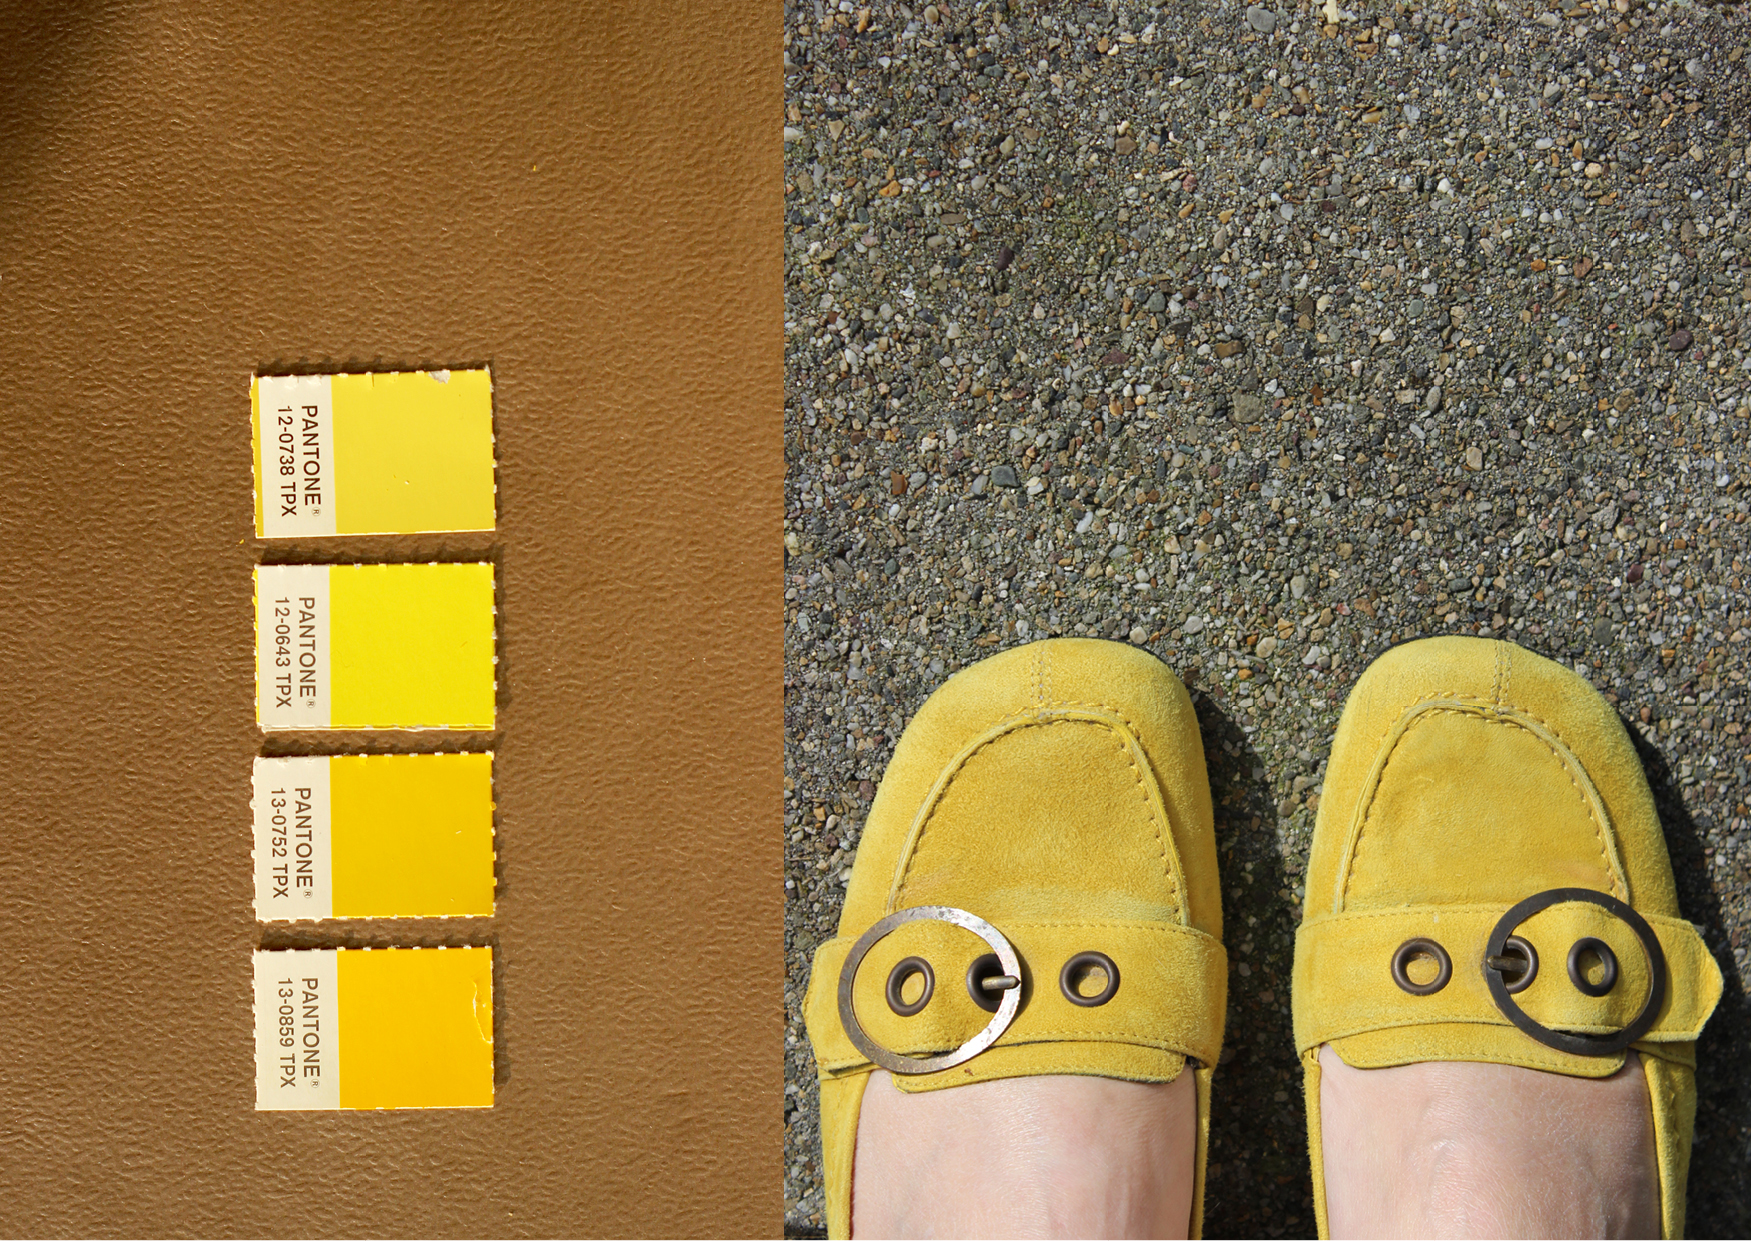 Modarium Geel moodboard 05 goud met pantone kleuren en gele schoentjes